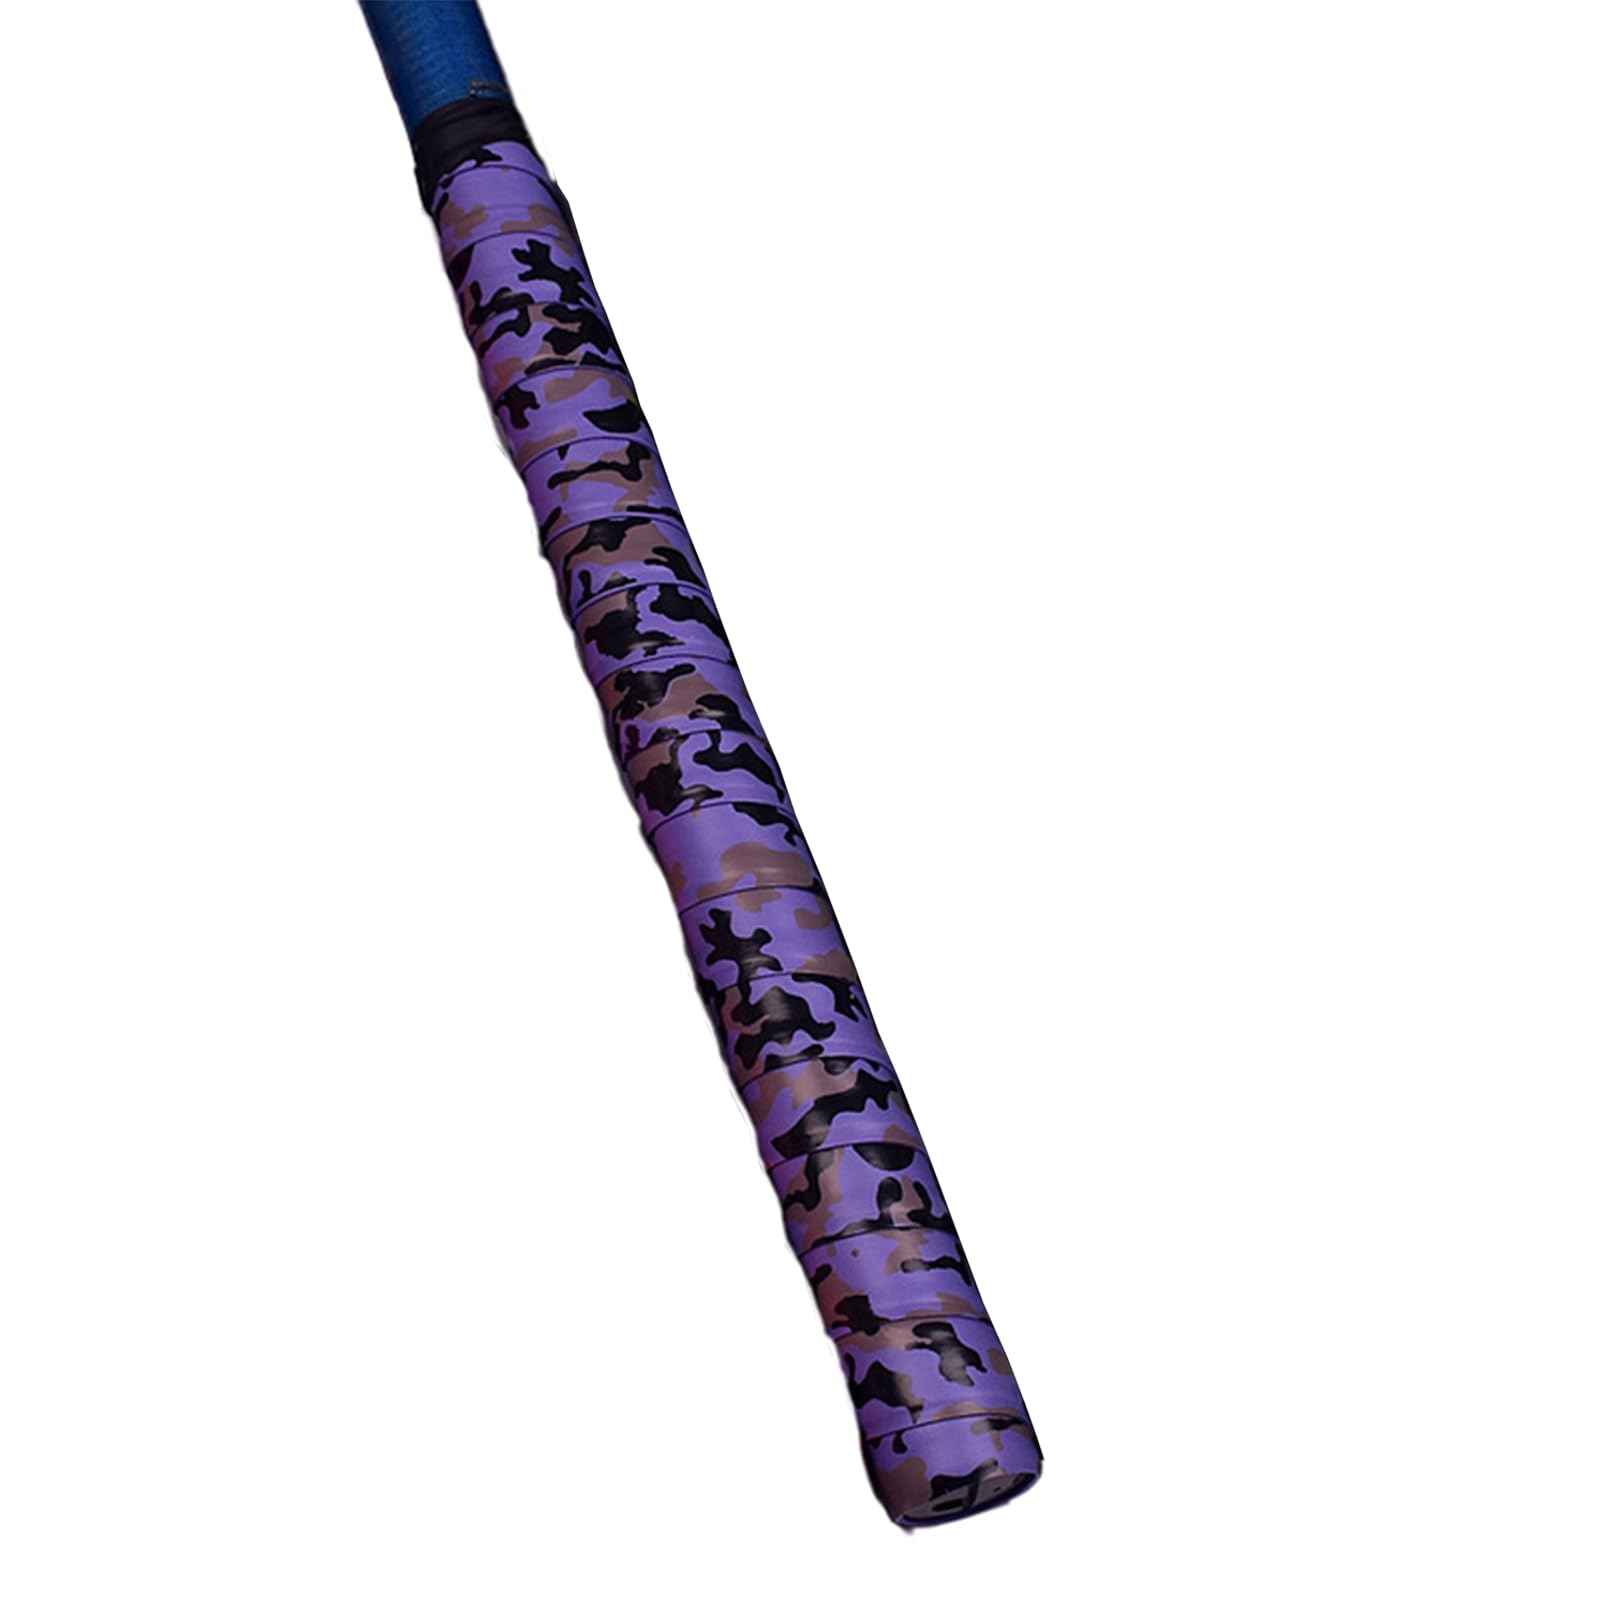 Griffband, 1,5 m, weit verbreitetes Rutengriffband, Camouflage, schweißabsorbierend, personalisiertes Aussehen, Griffwickelgurt für Angelruten, Wickelgurt von ulafbwur